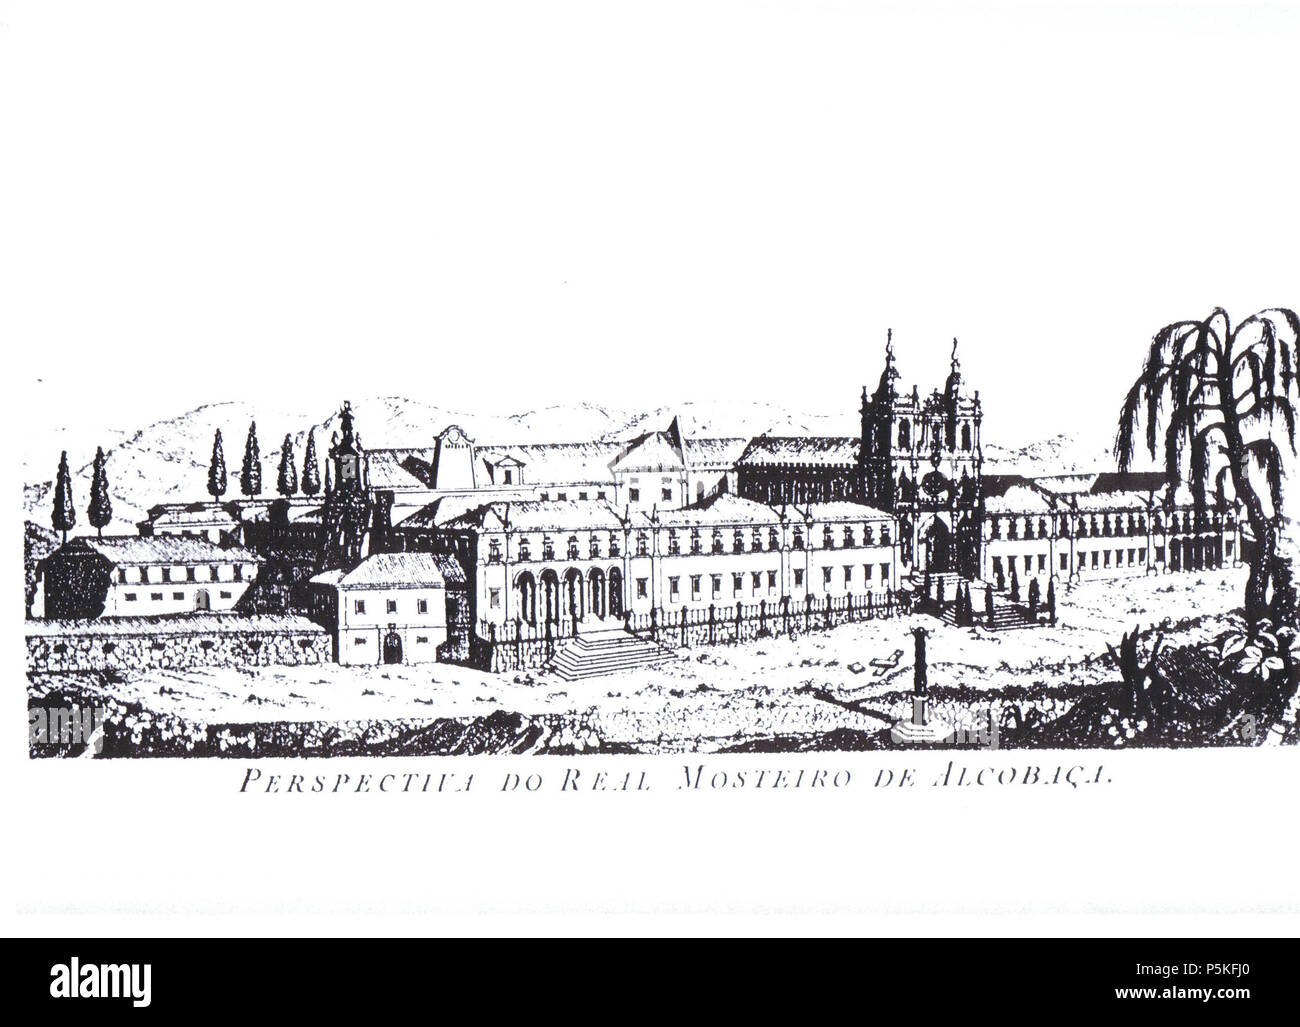 N/A. Gravur der Blick auf die Königliche Abtei von Alcobaca, vor 1750 von unbekannter Herkunft. zwischen 1700 und 1750. Unbekannt 77 Alcobaca. mosteiro. 1750 Stockfoto